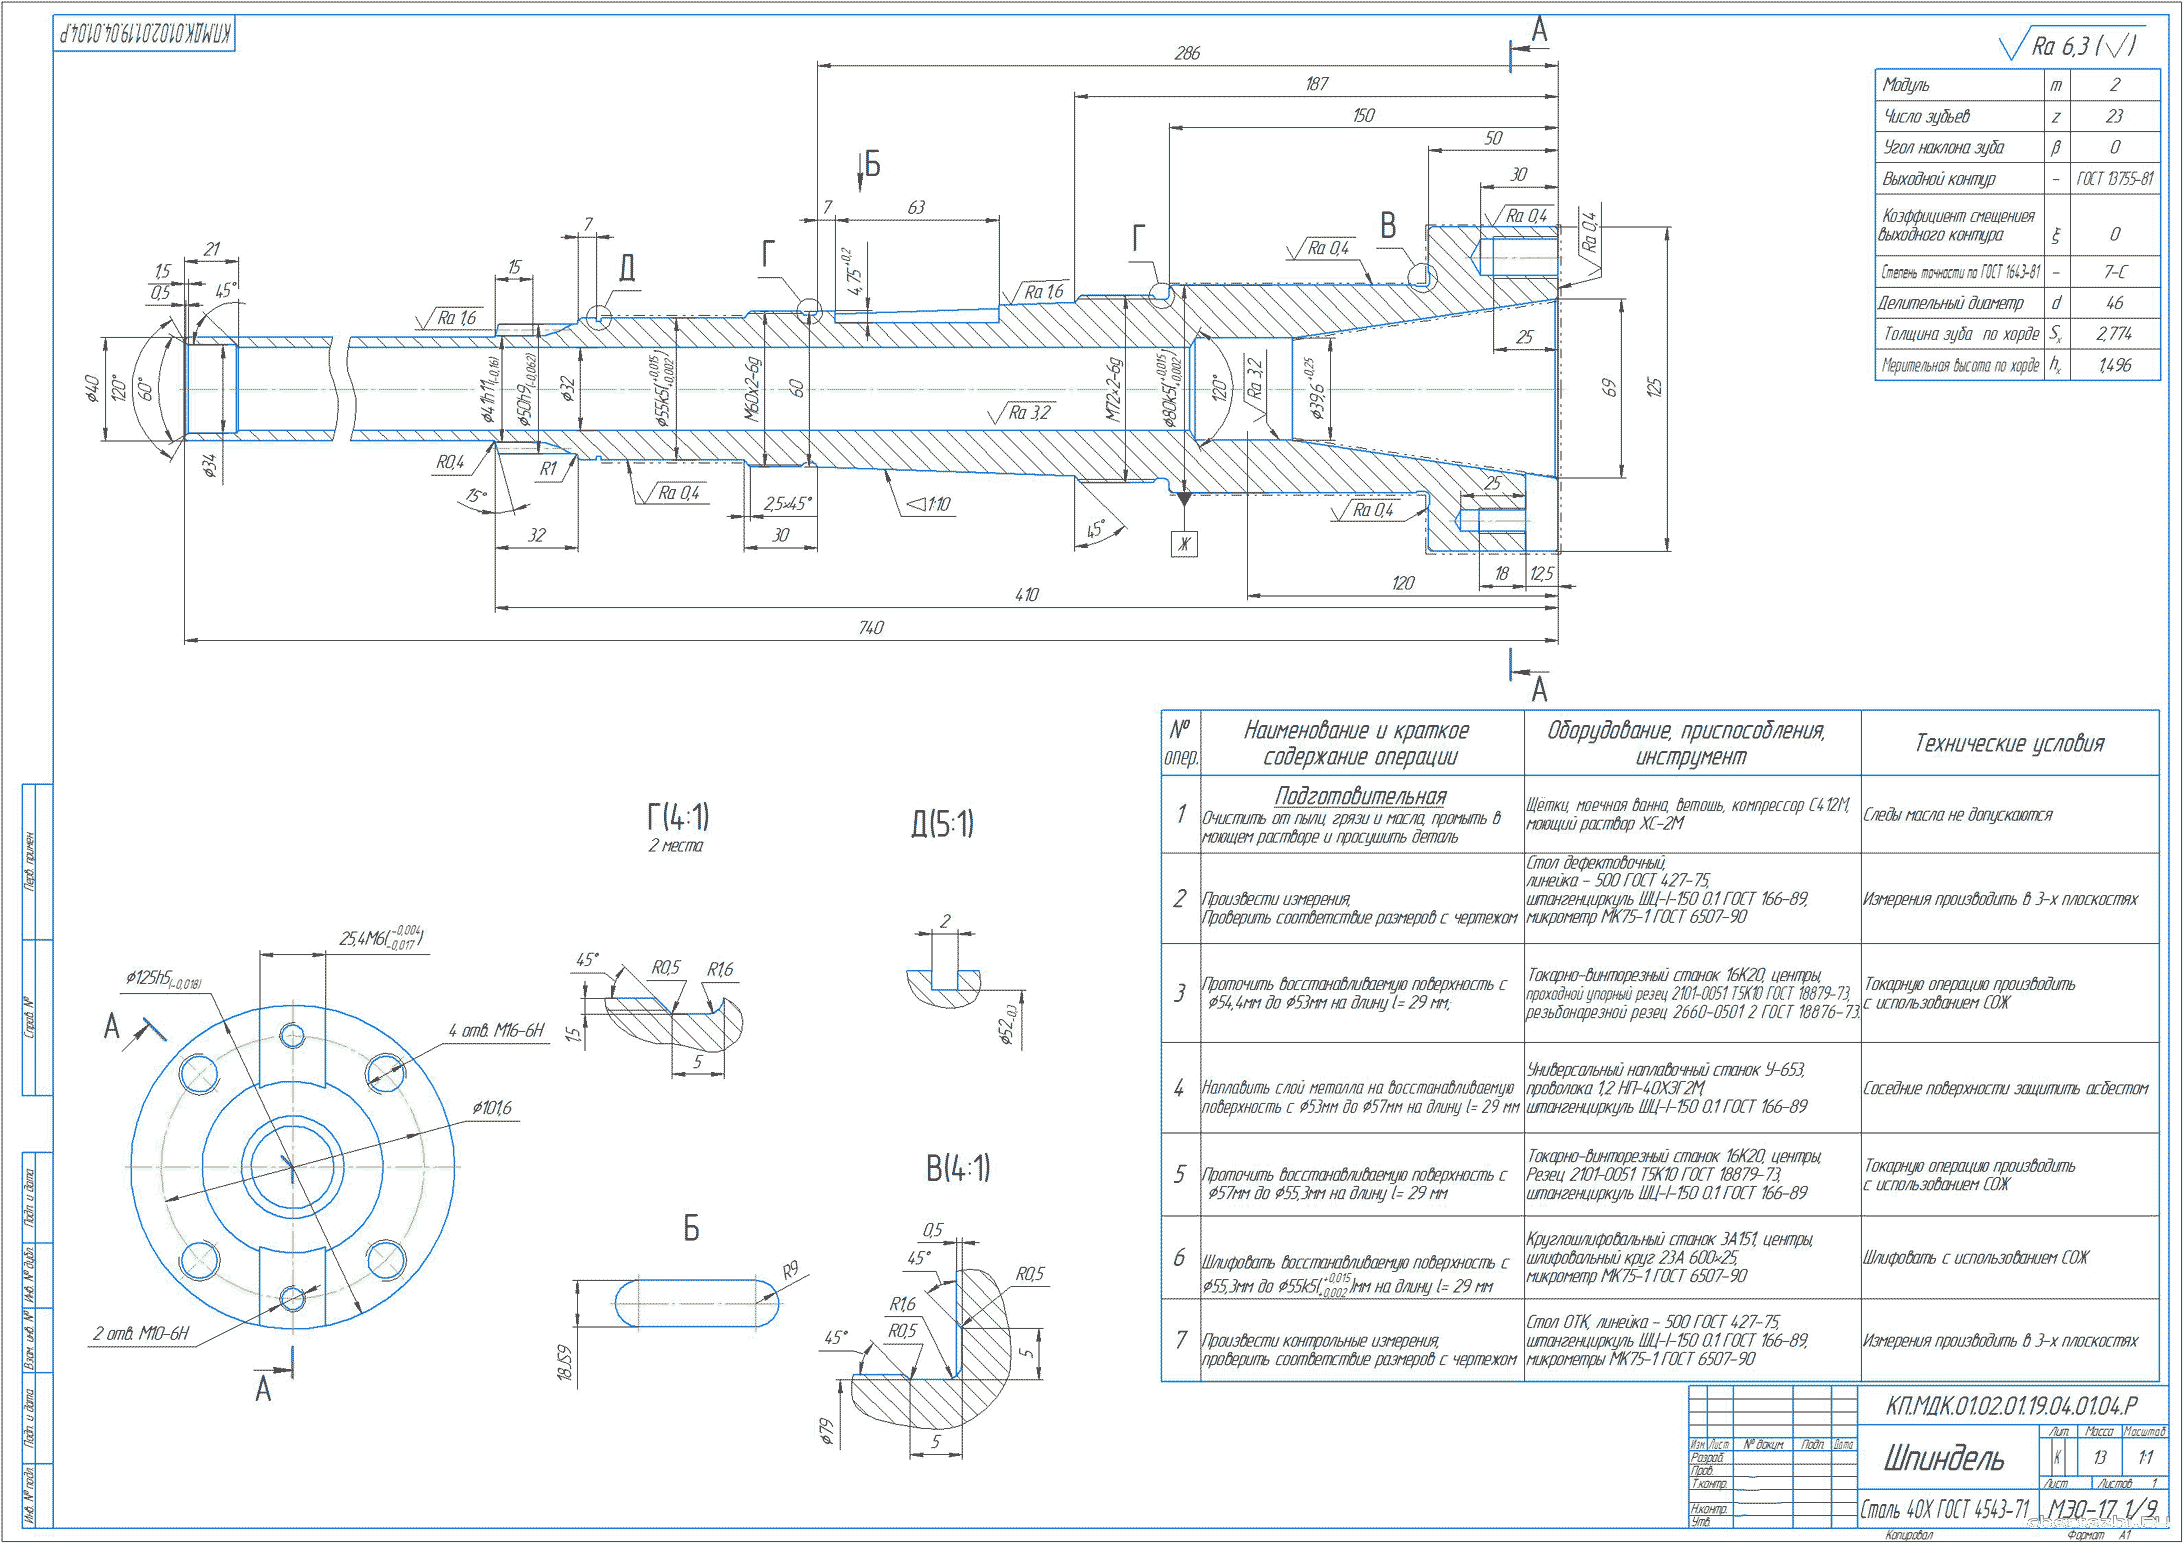 Курсовой проект - Разработка шпиндельного узла станка 6н81